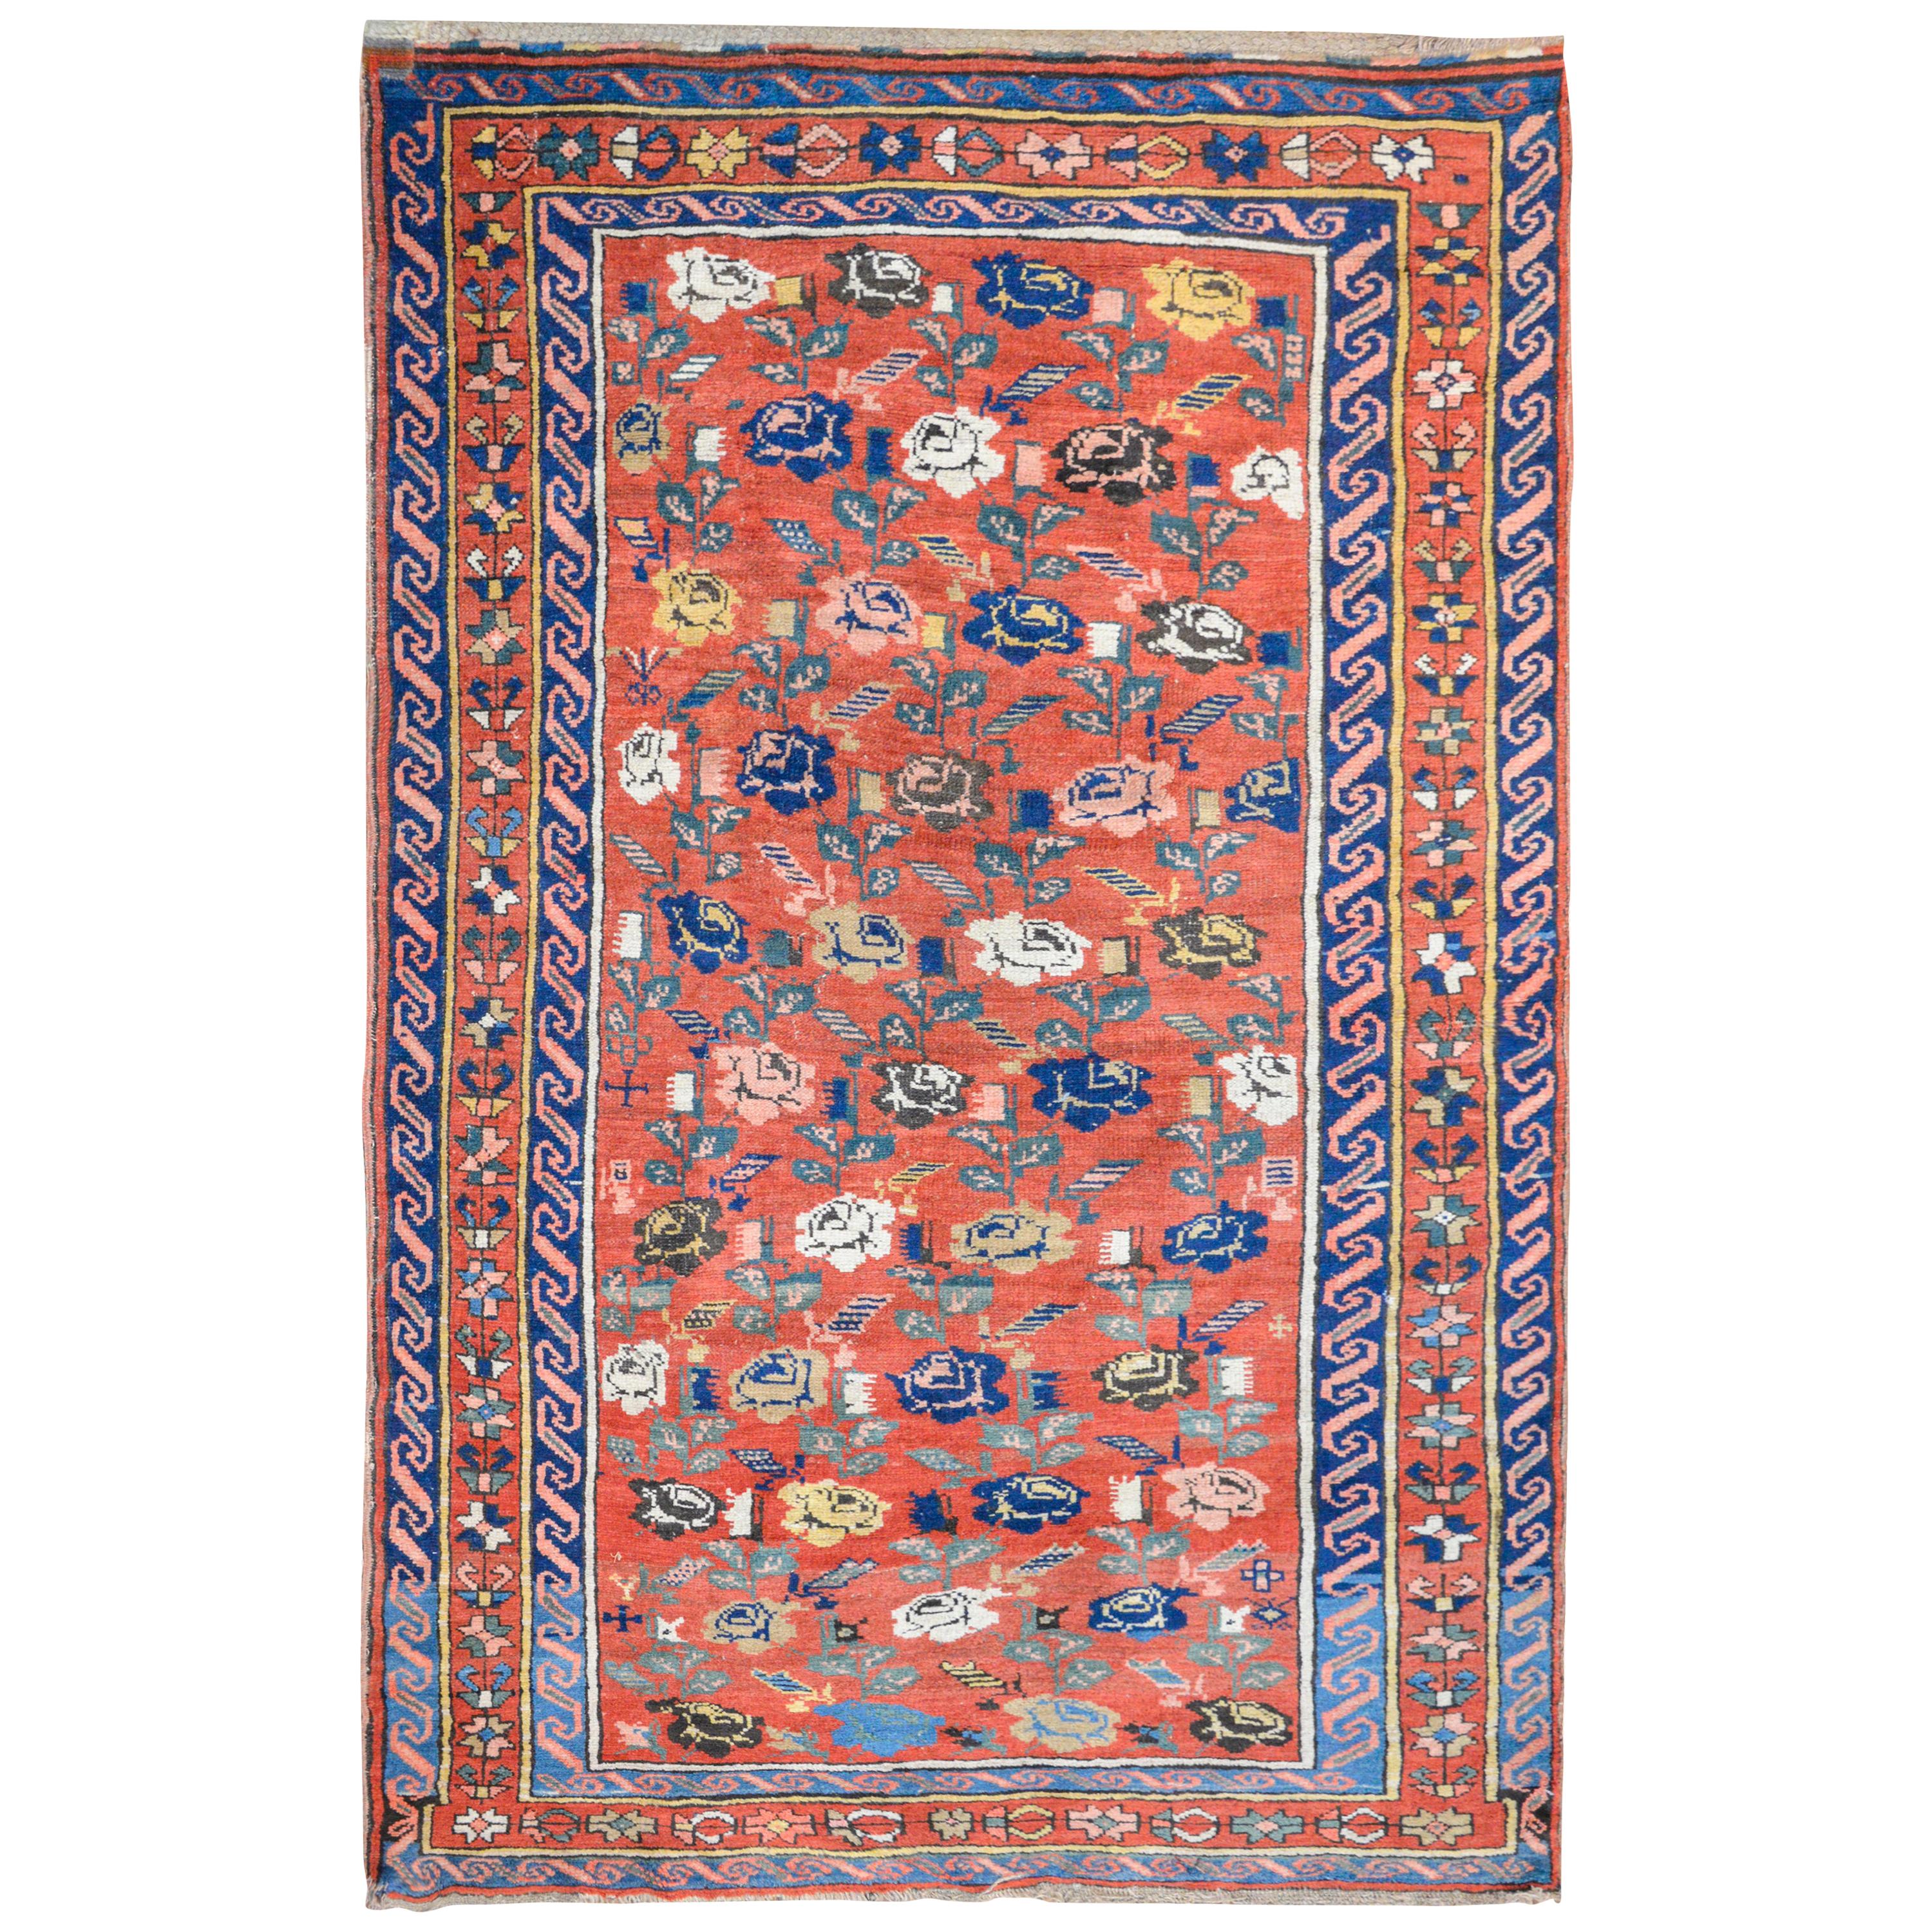 Außergewöhnlicher kaukasischer Karabagh-Teppich aus dem frühen 20. Jahrhundert